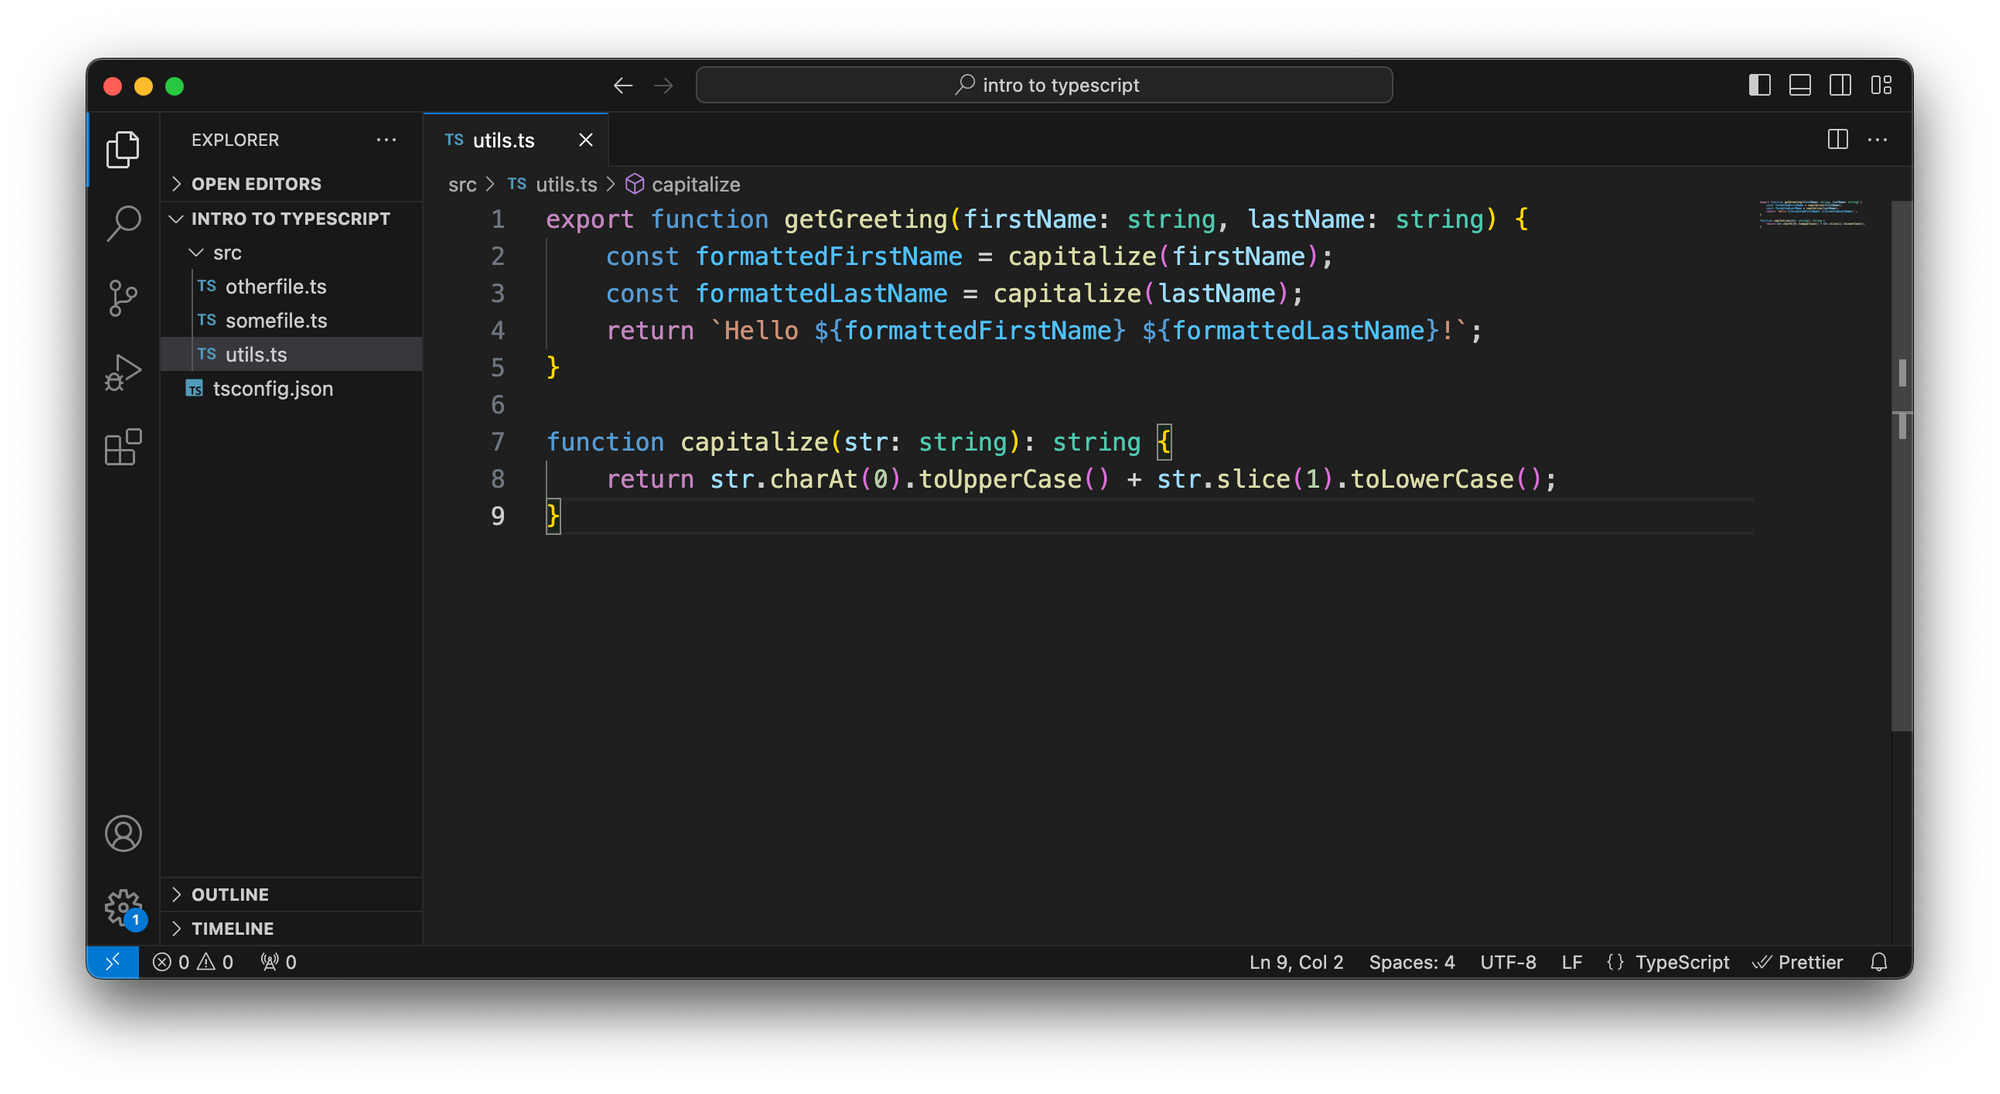 VS Code con un archivo TypeScript simple. En este archivo, definimos una función 'getGreeting' que recibe dos argumentos, un nombre y un apellido. El tipo de ambos argumentos es un string.